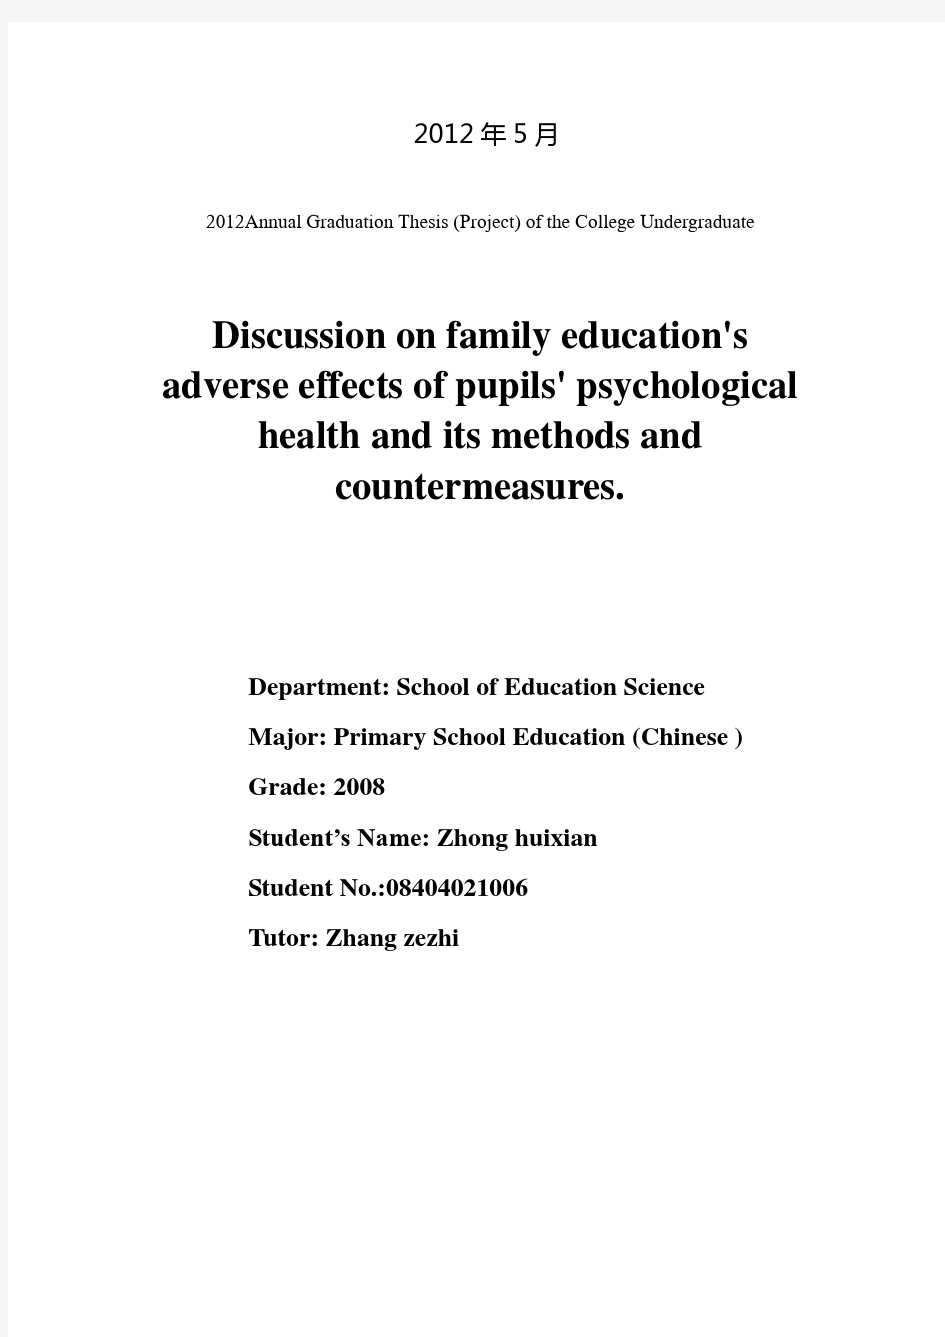 浅谈家庭教育对小学生心理健康的不良影响及其方法和对策-学位论文